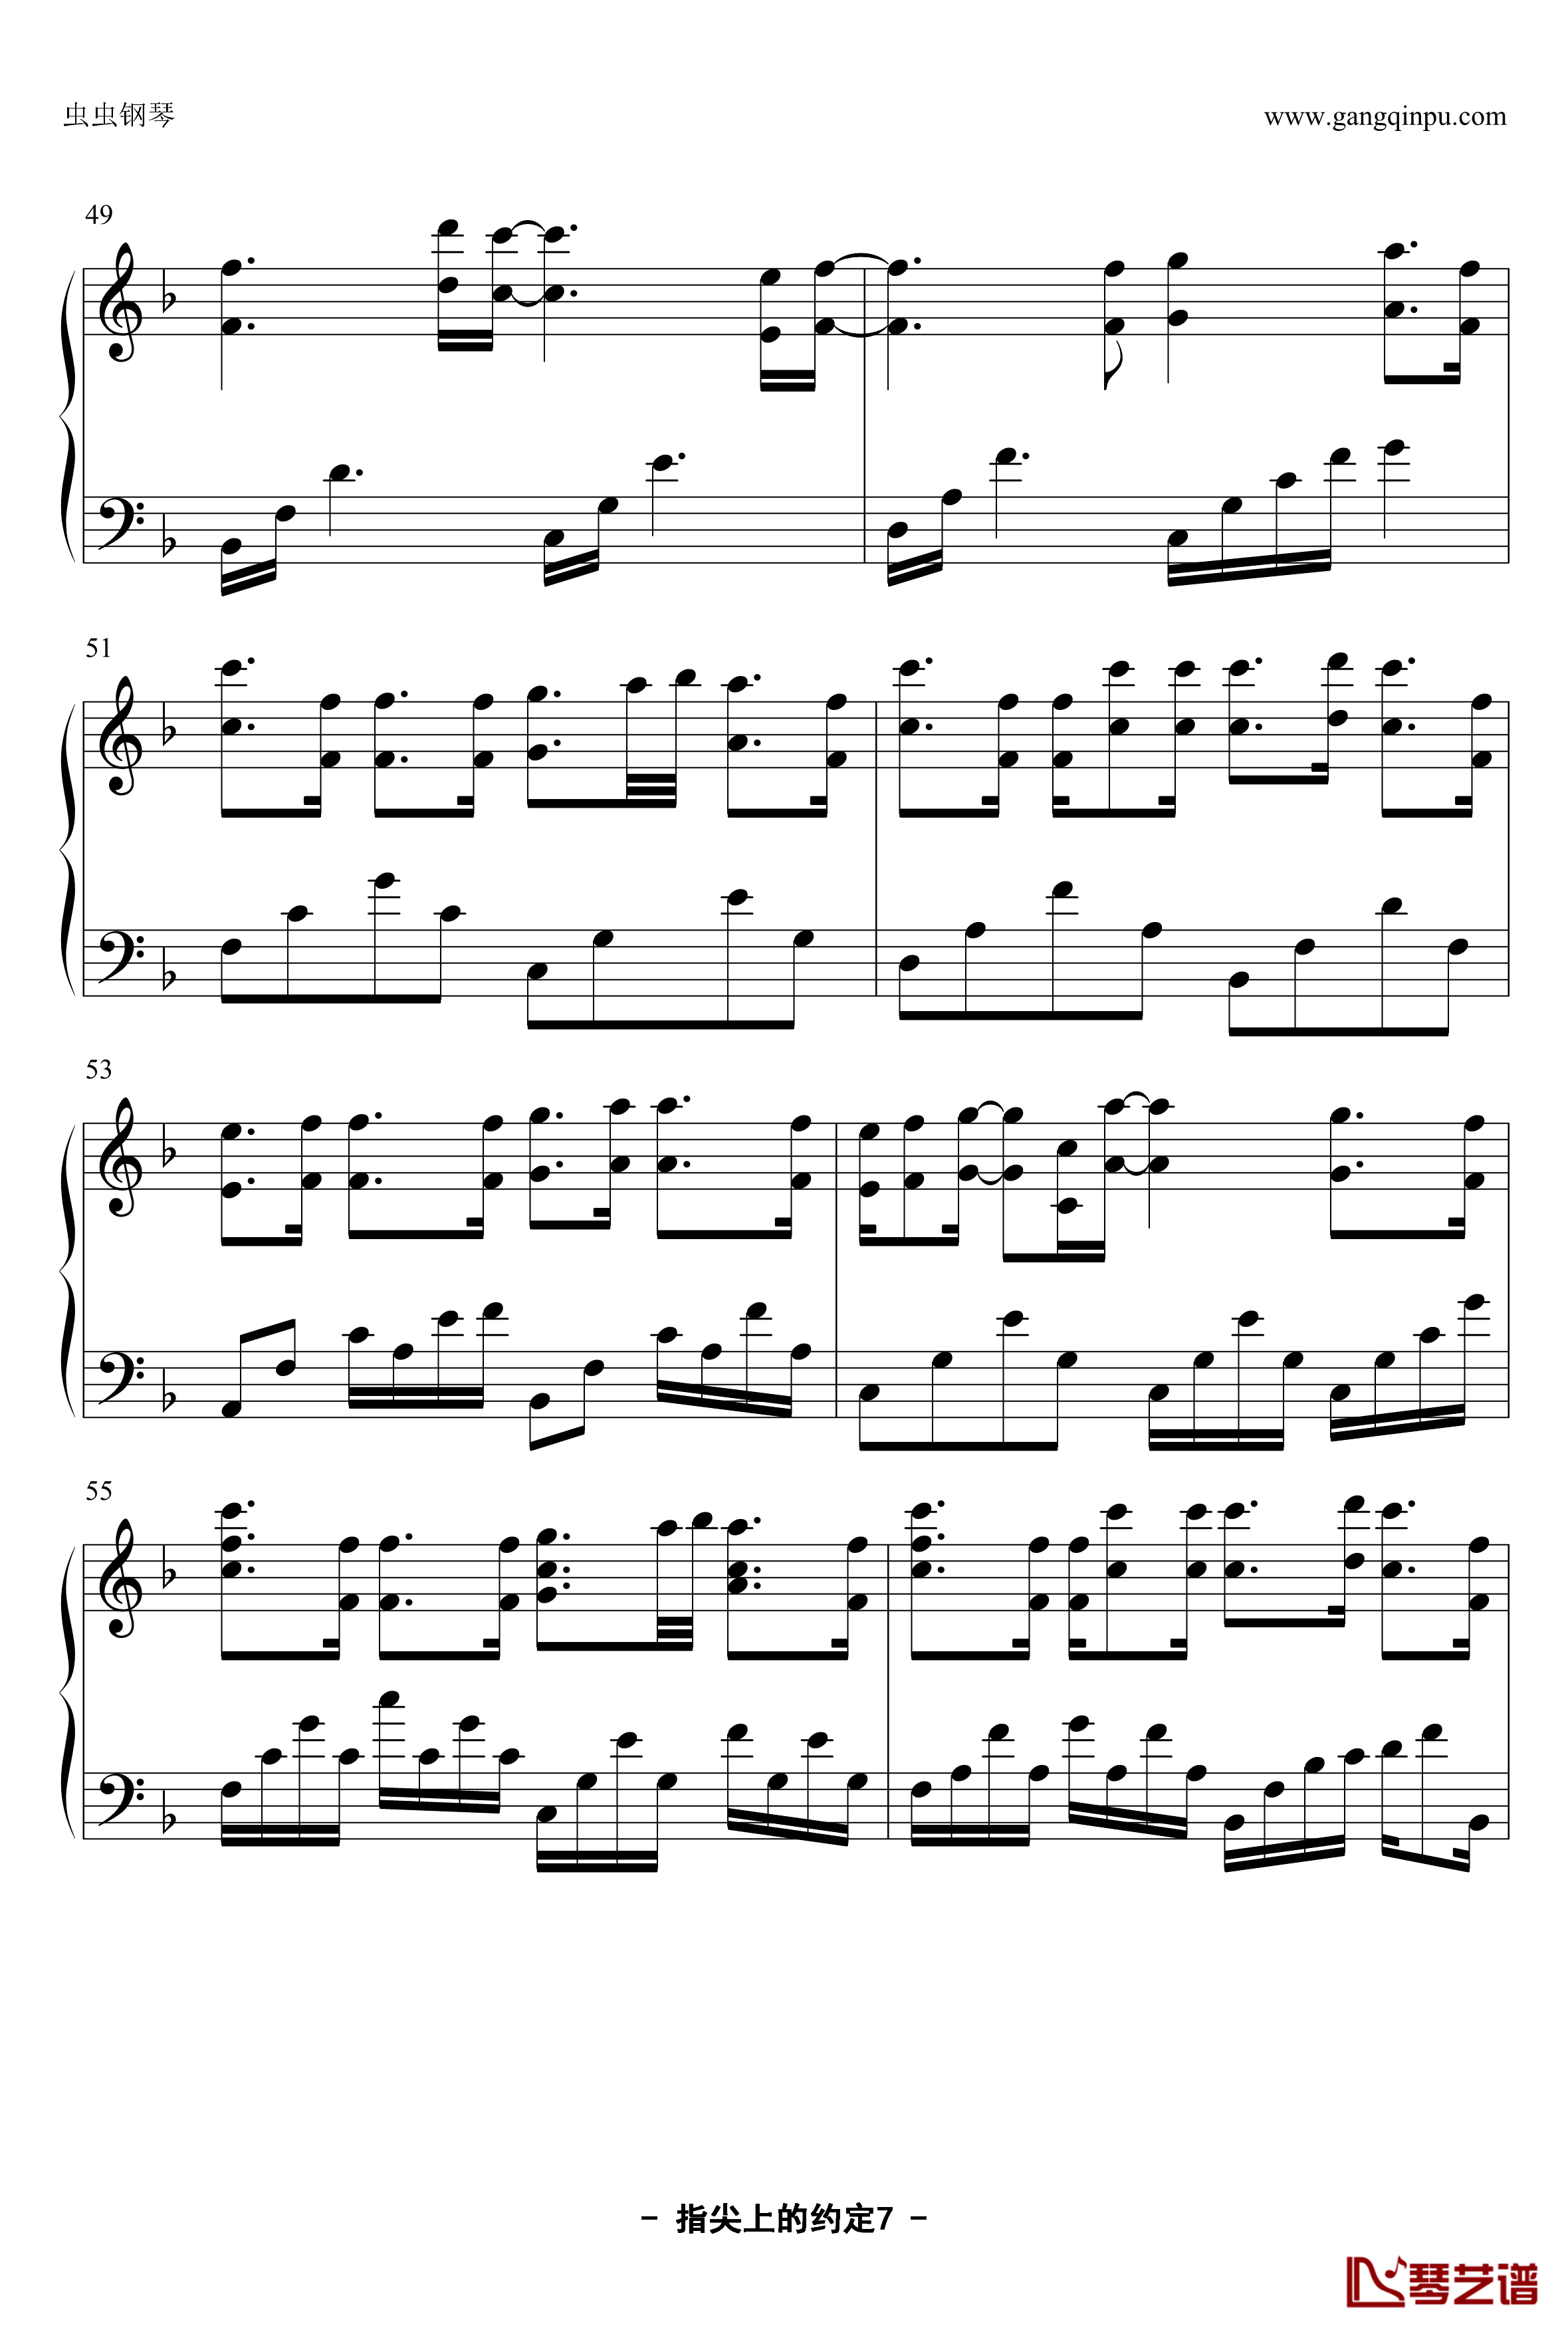 指尖上的约定钢琴谱-YUBIKIRI-GENMAN-Mili7